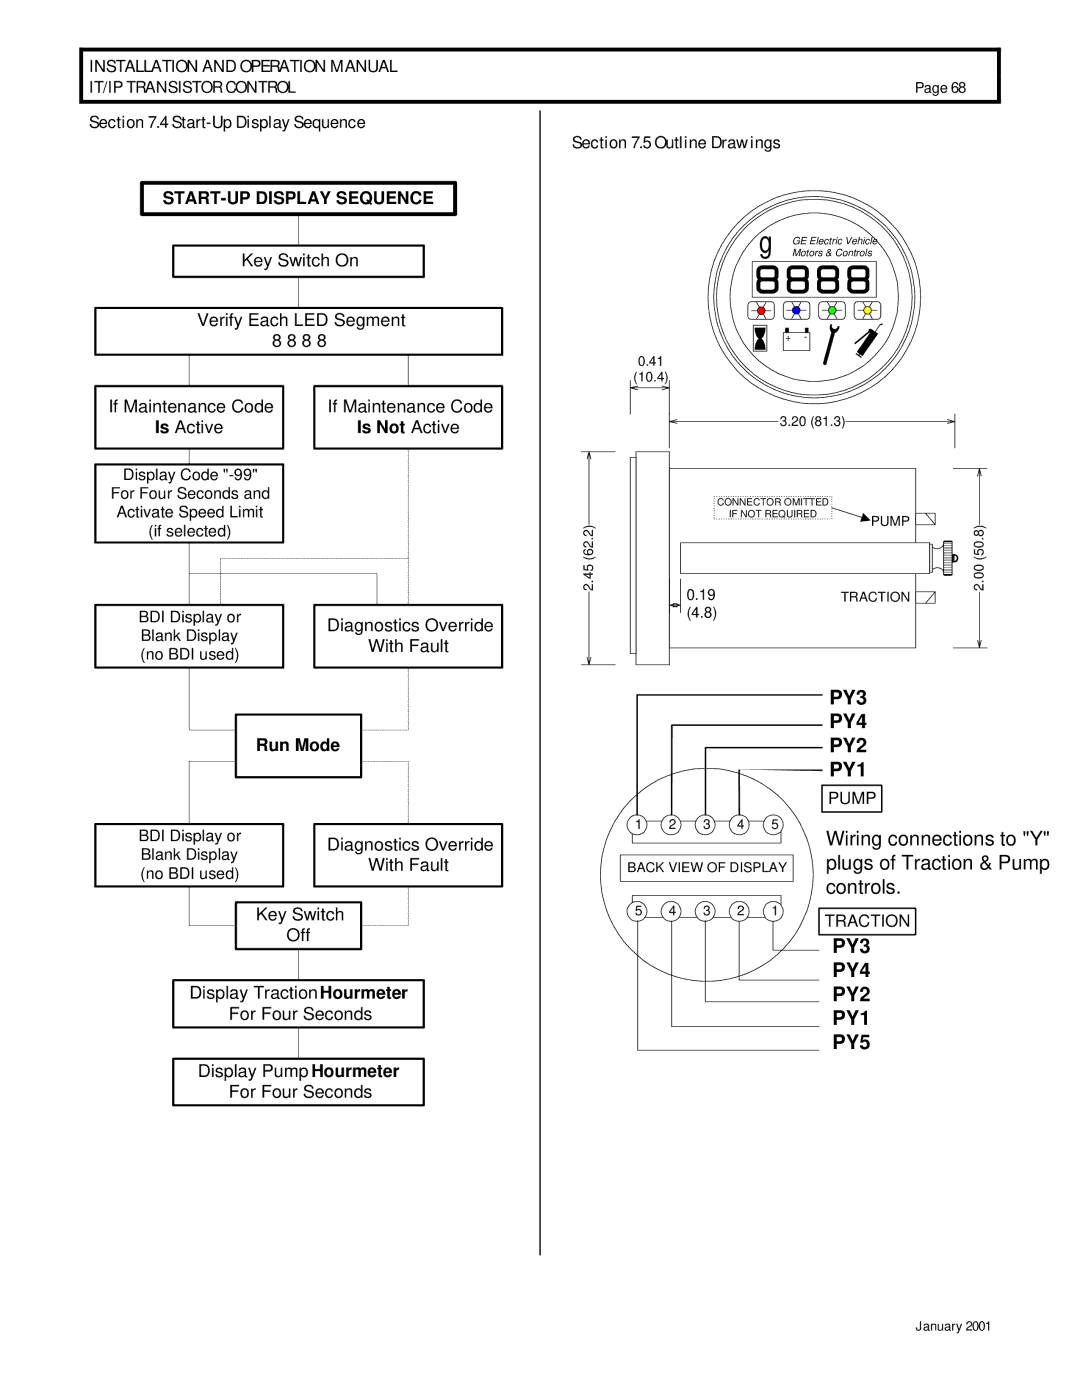 GE IC3645SP4U400N3, IC3645SR4U404N2 operation manual Start-Up Display Sequence, Outline Drawings 